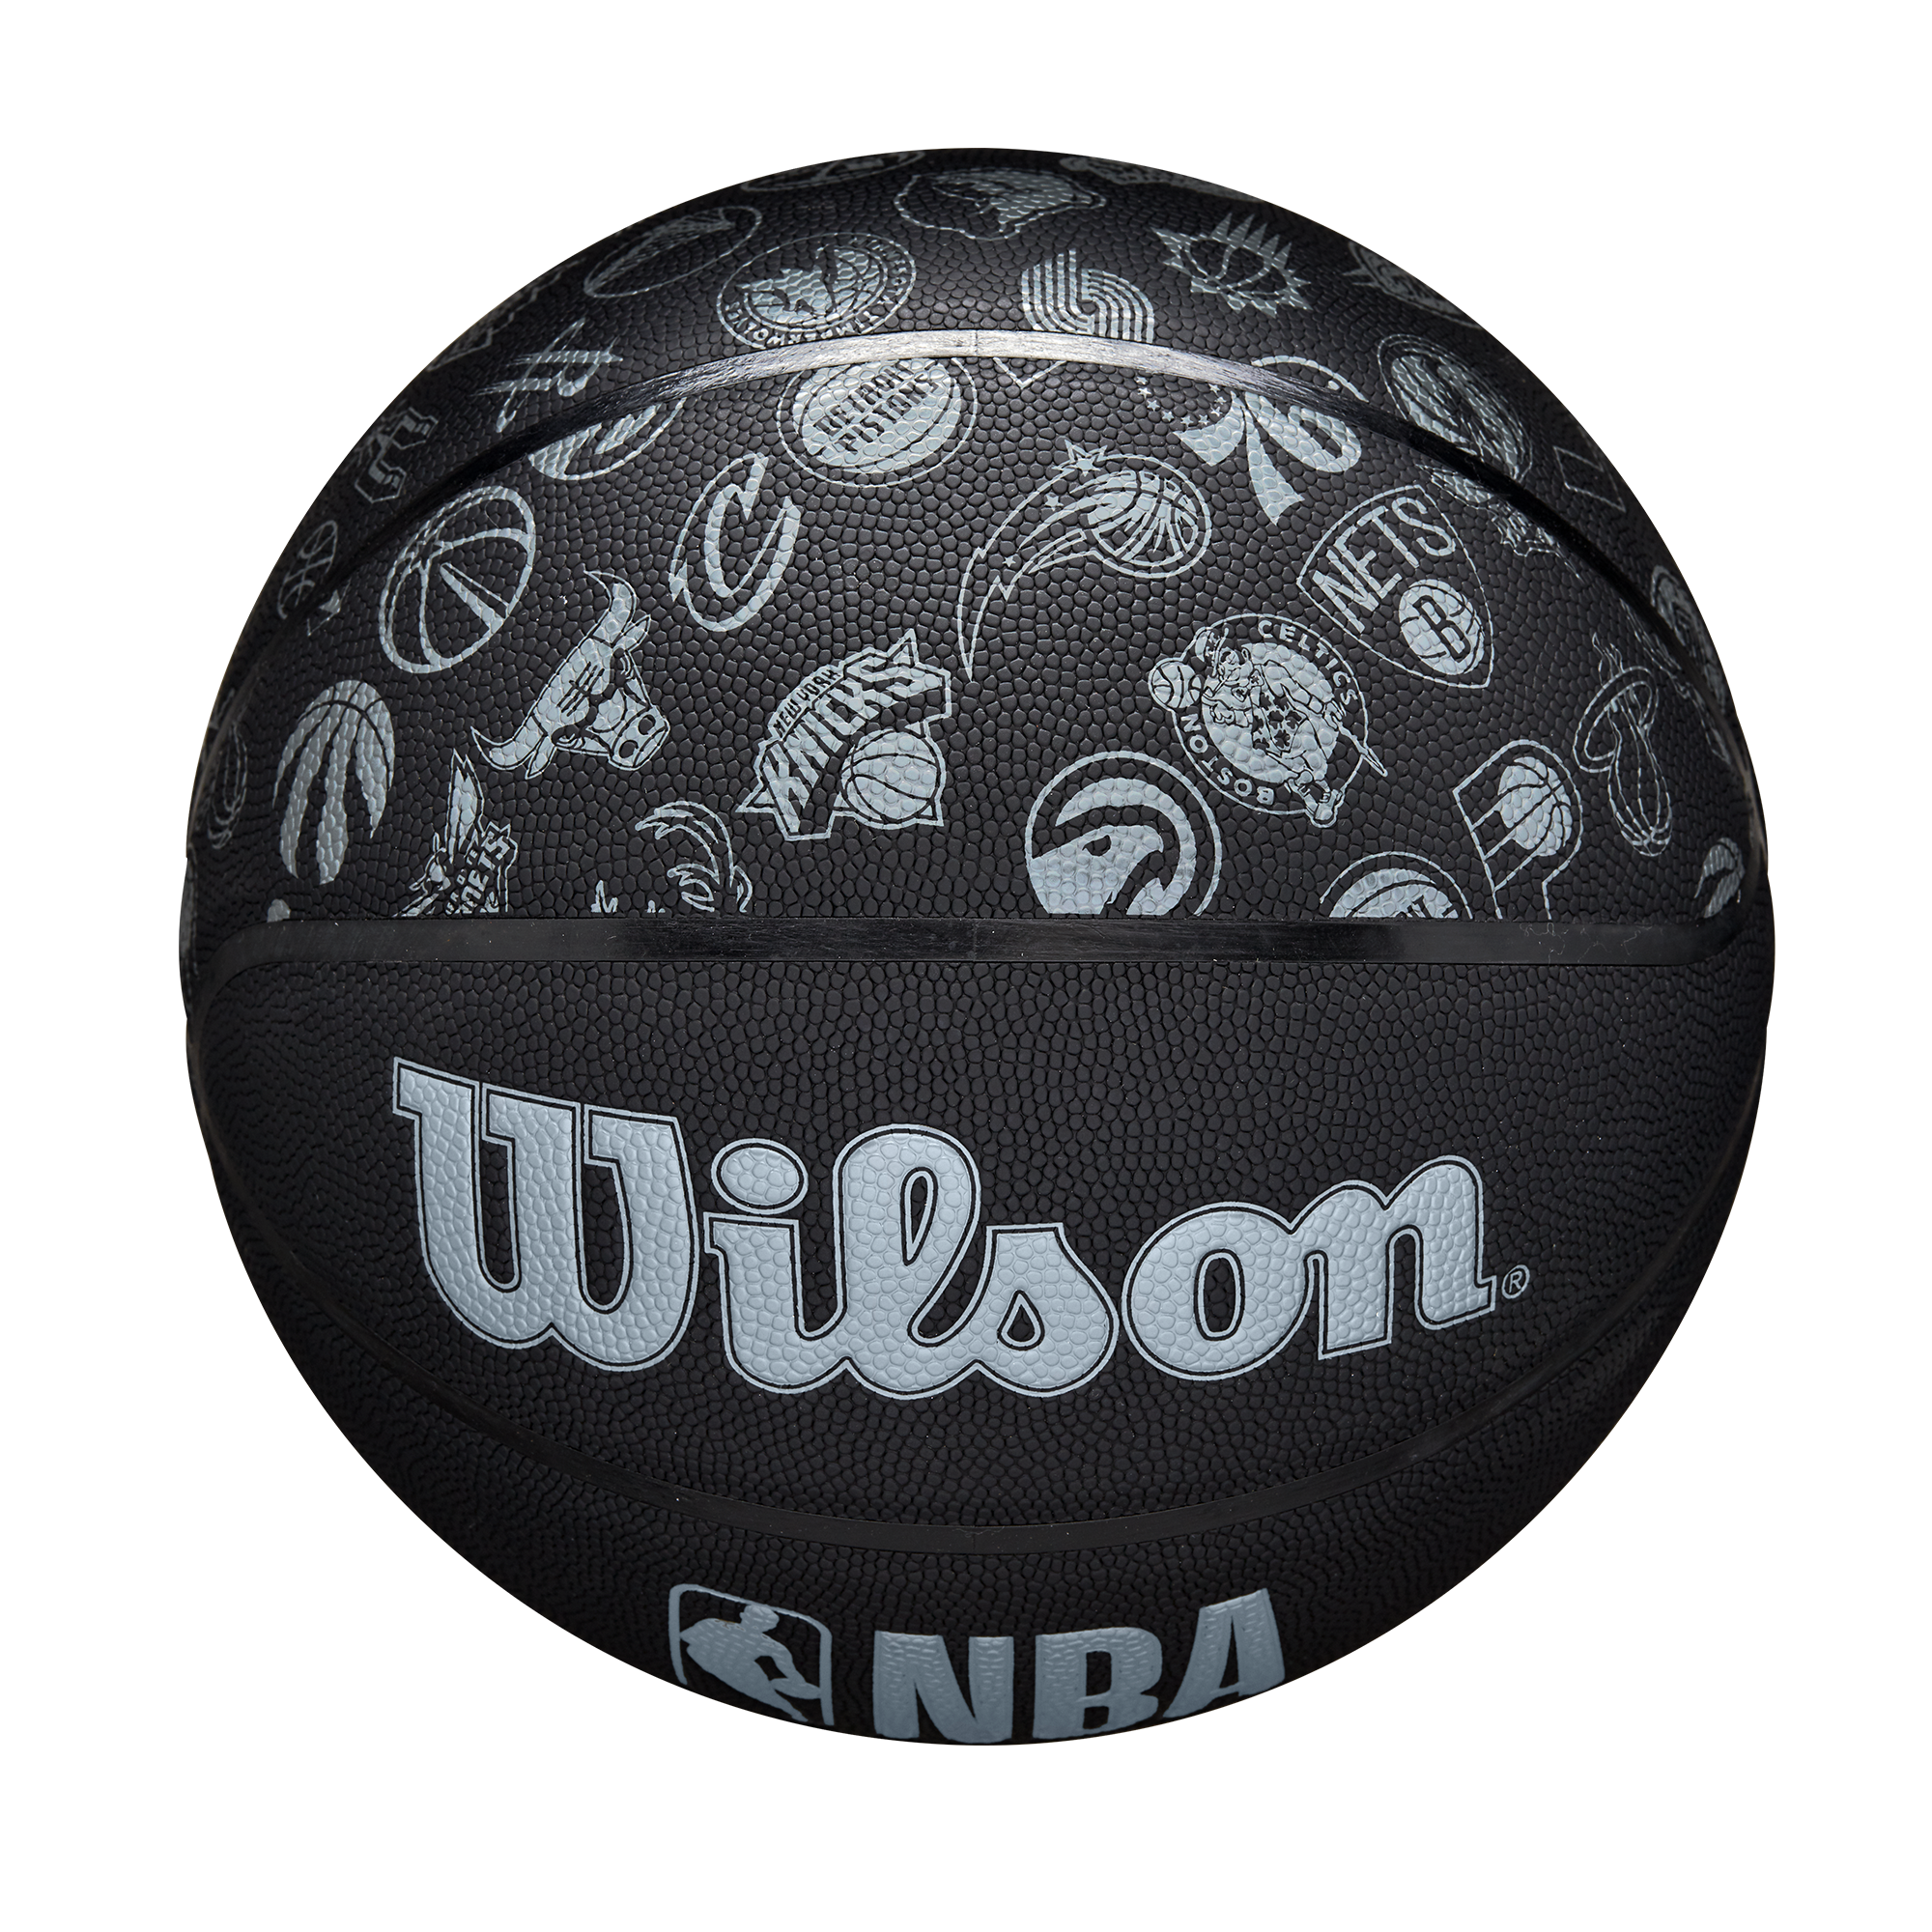 Wilson NBA All Matte Black Basketball